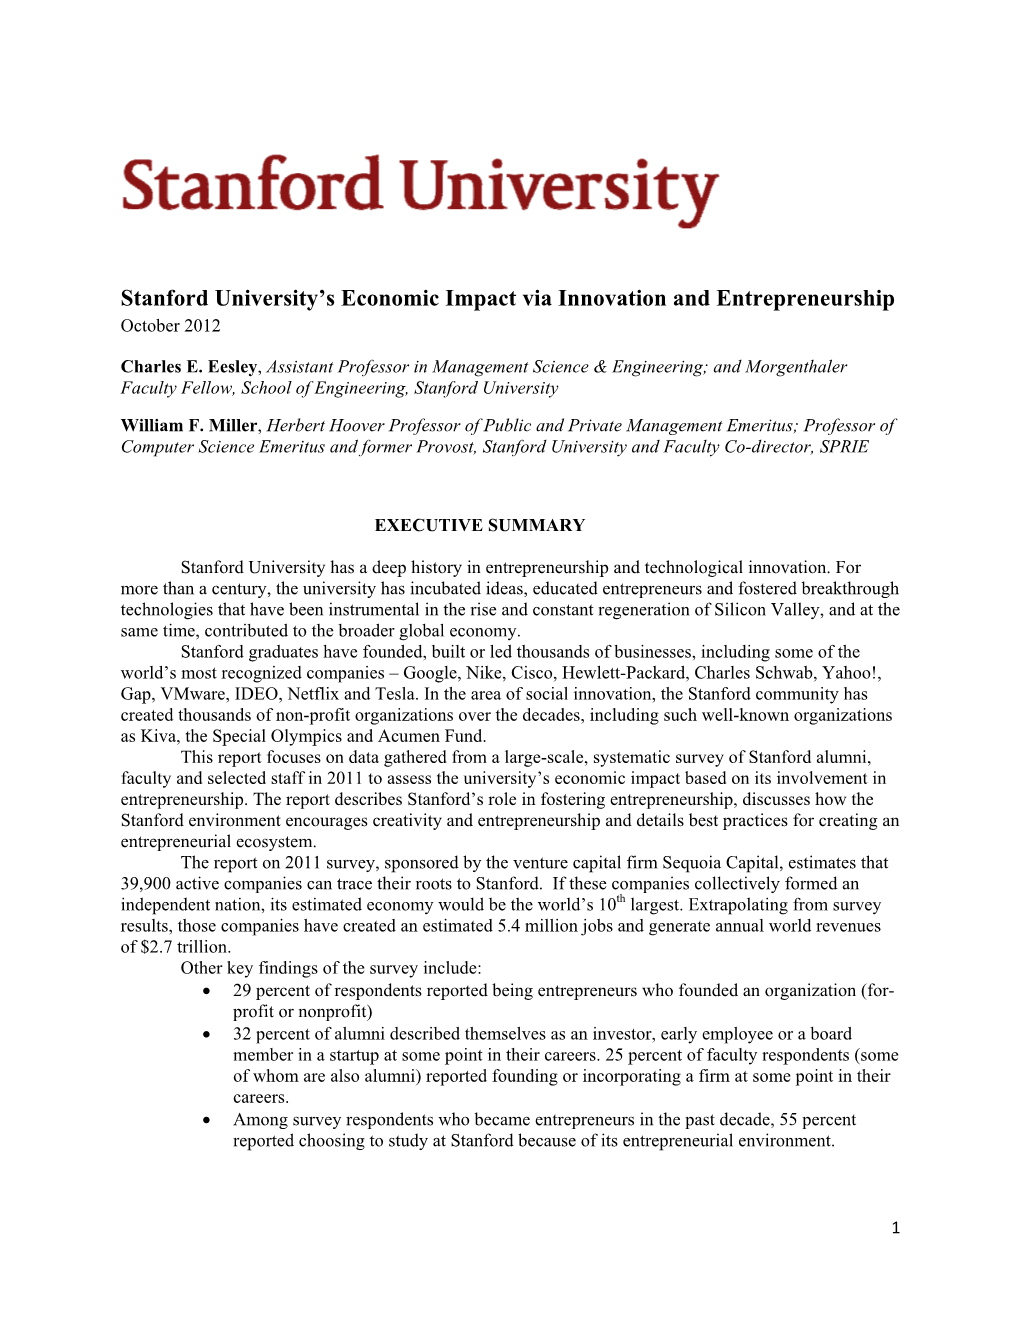 Stanford University's Economic Impact